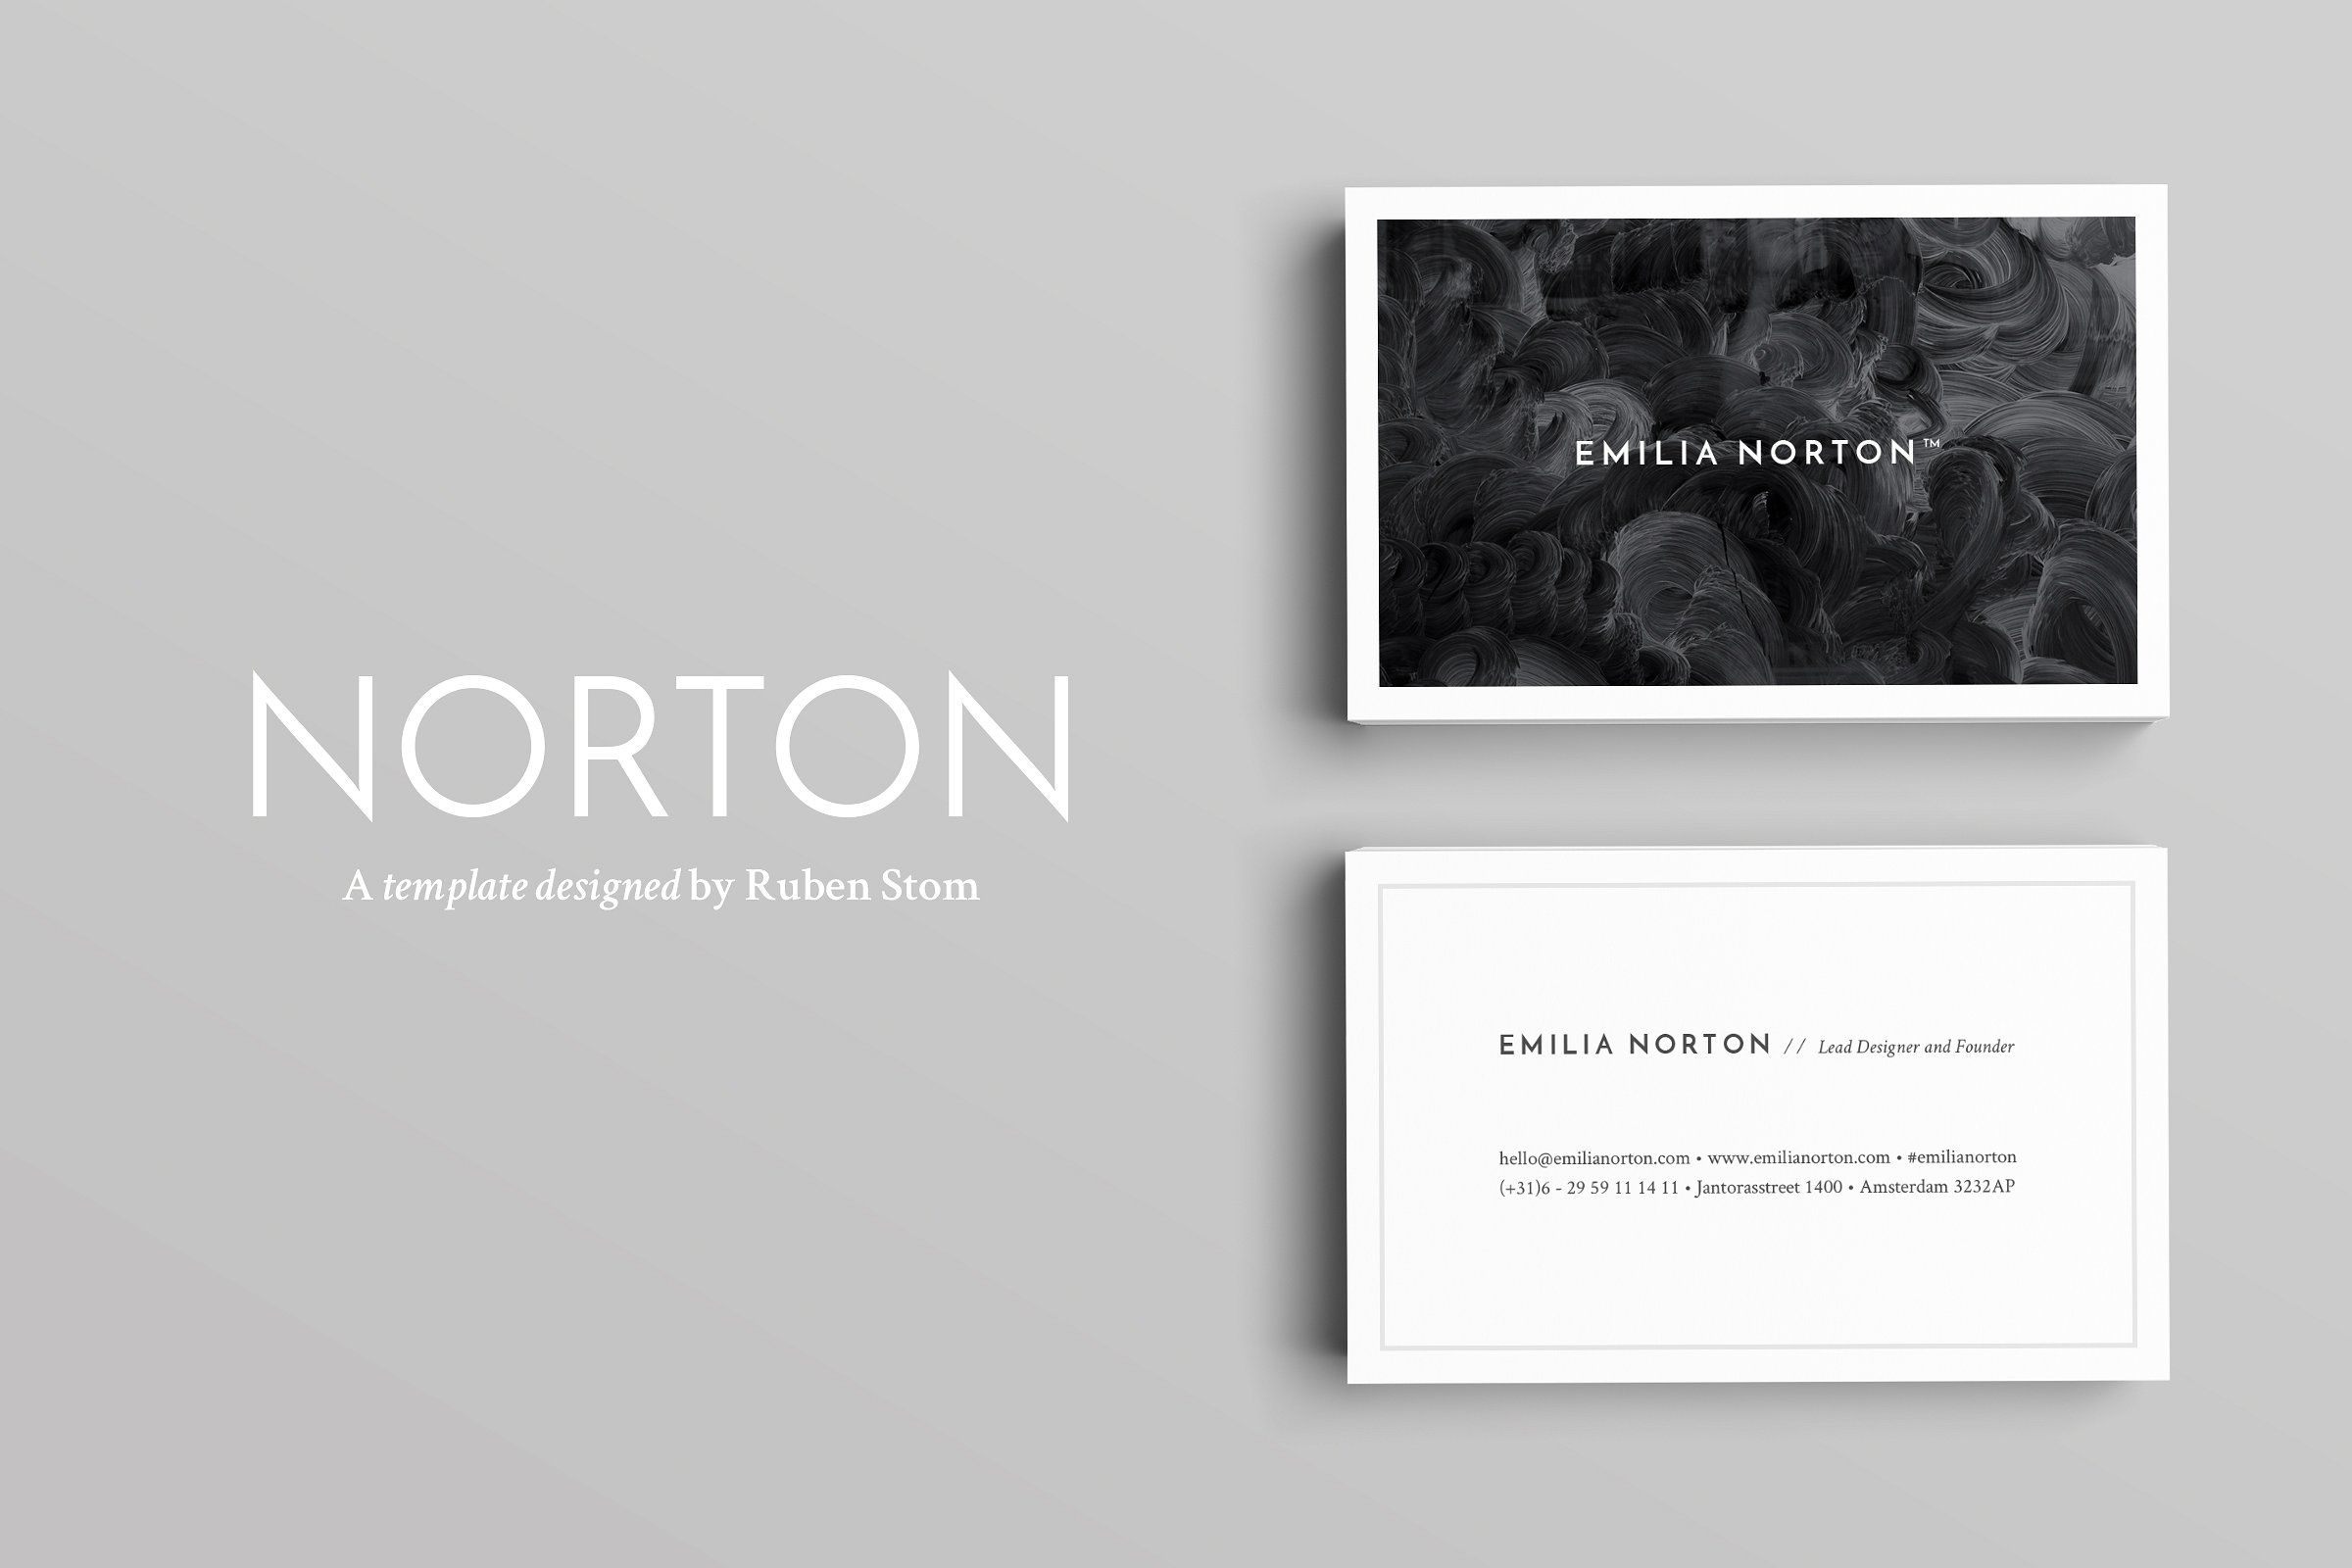 抽象创意名片模板设计素材Norton Business Ca